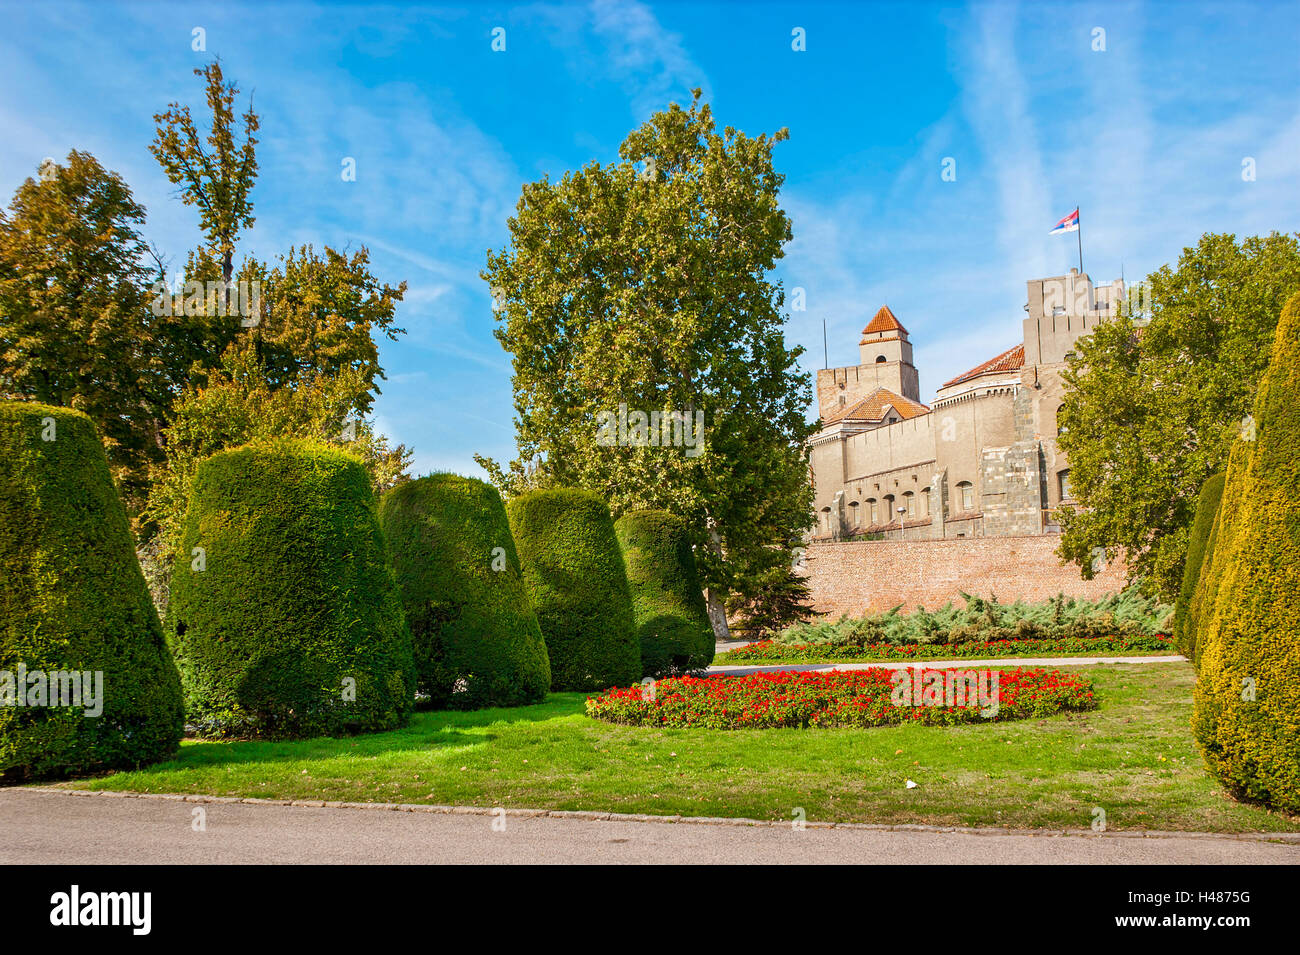 E la fortezza di Kalemegdan park sulla parte anteriore sono i principali punti di riferimento, Belgrado Foto Stock